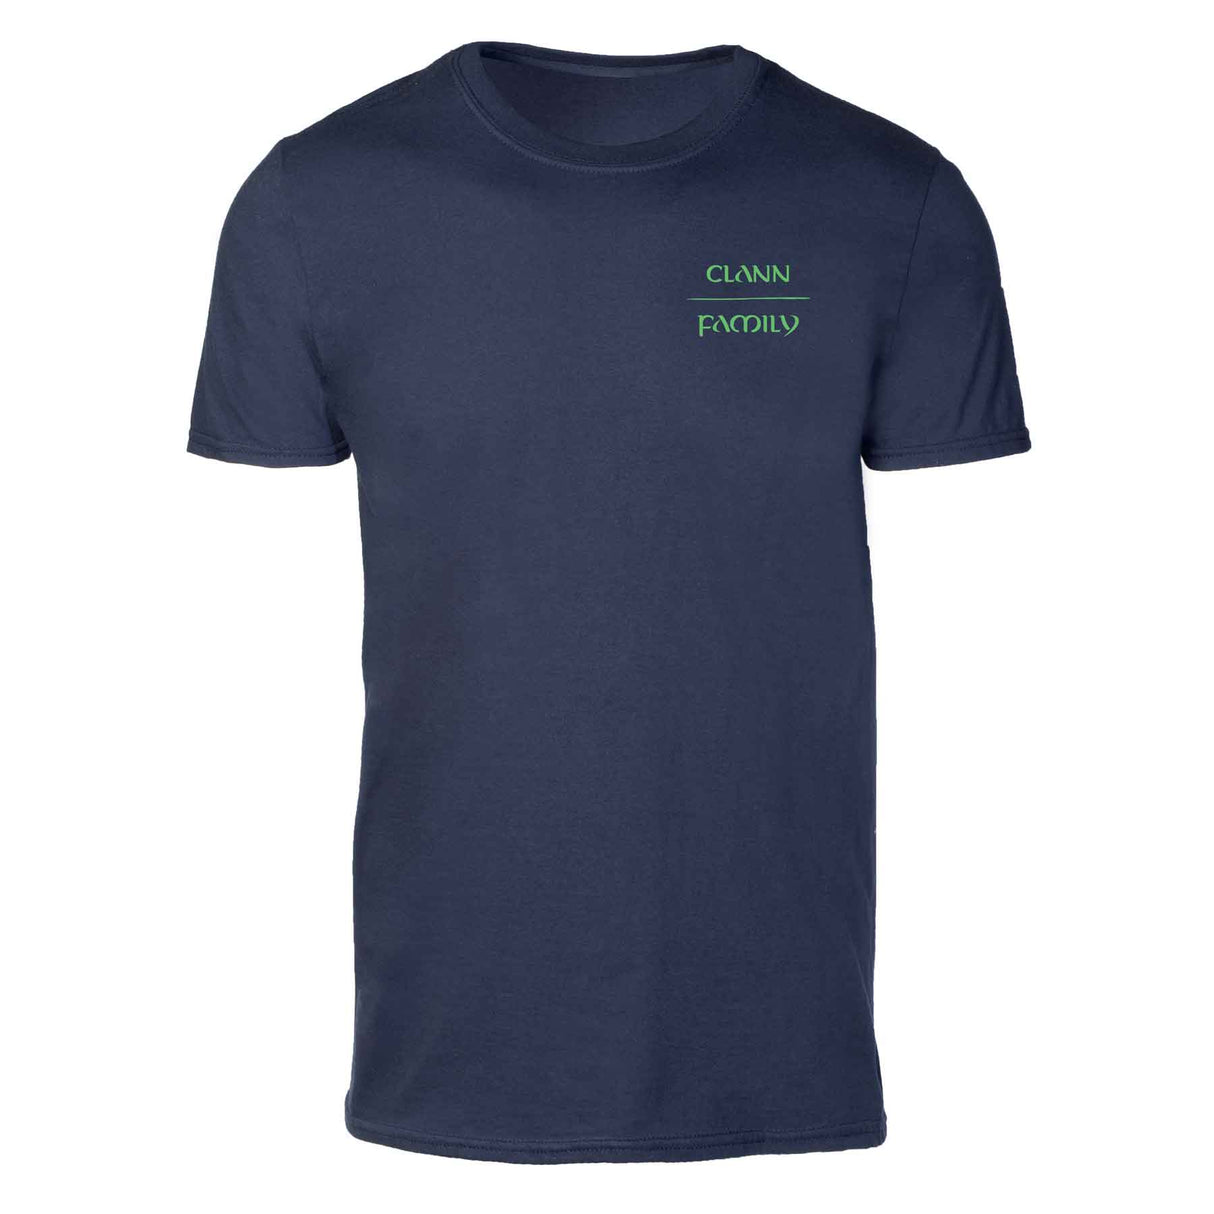 Ogham Family Shirt, Navy - Creative Irish Gifts